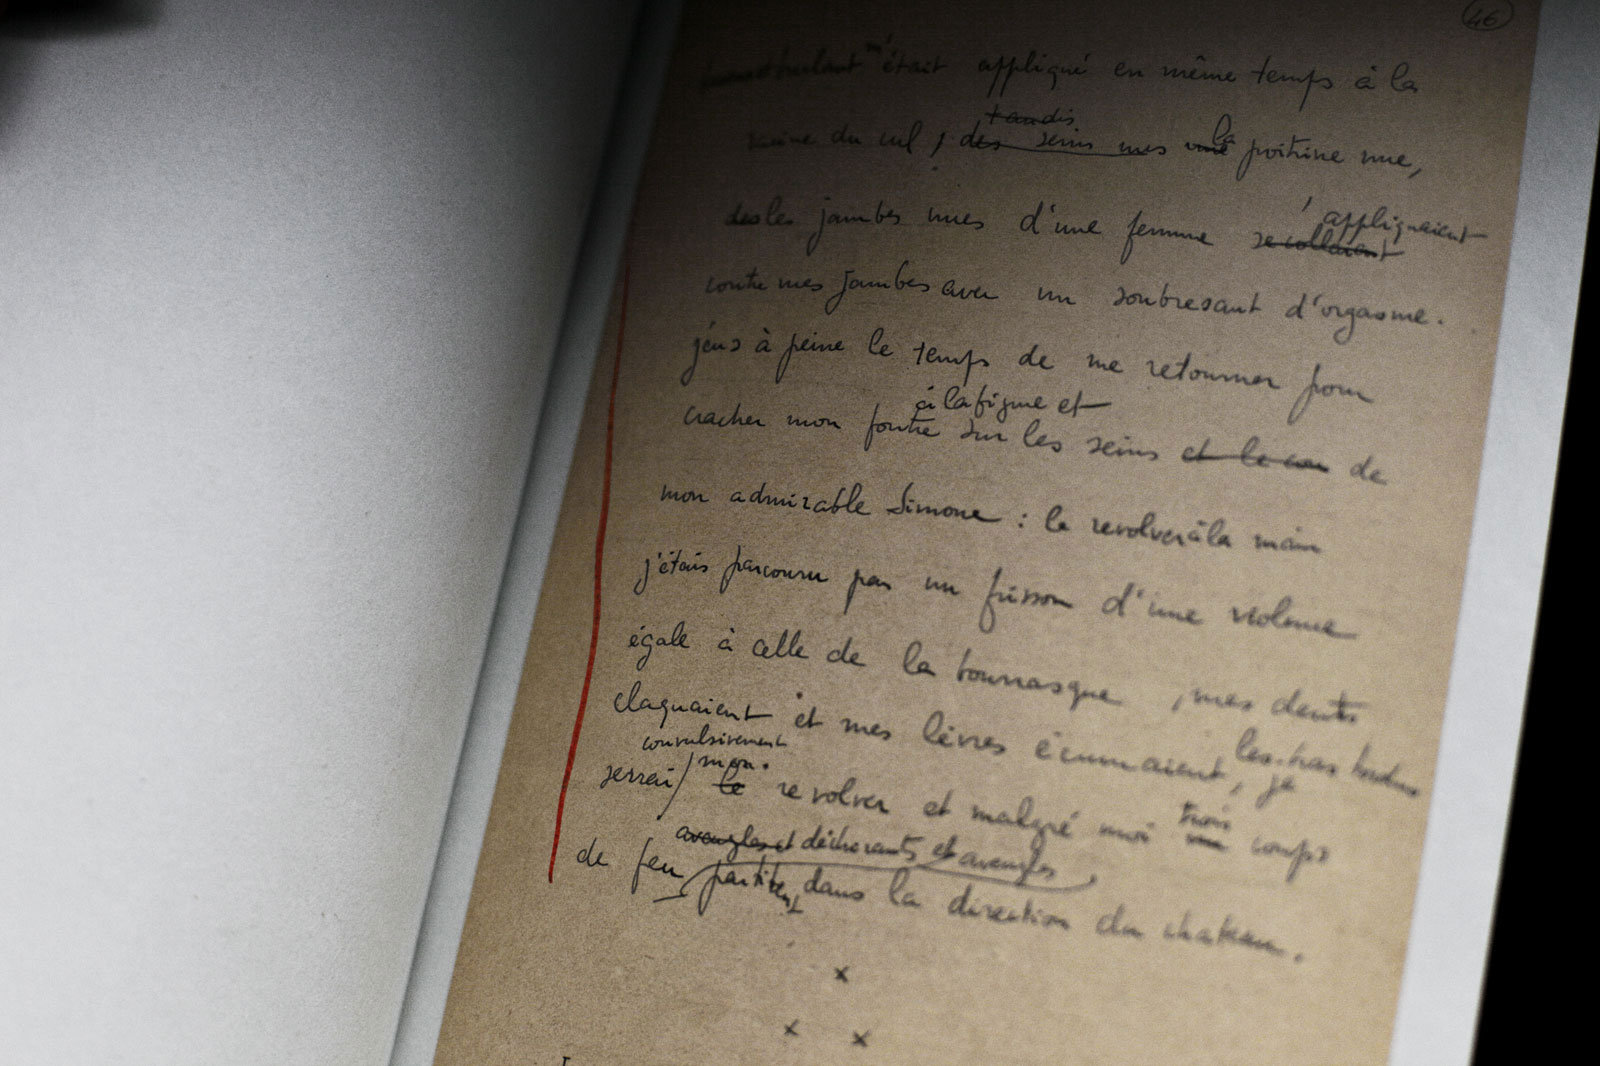 série Le journal de l'oeil _ Manuscrit de Histoire de l'oeil, BNF, Paris, 2014